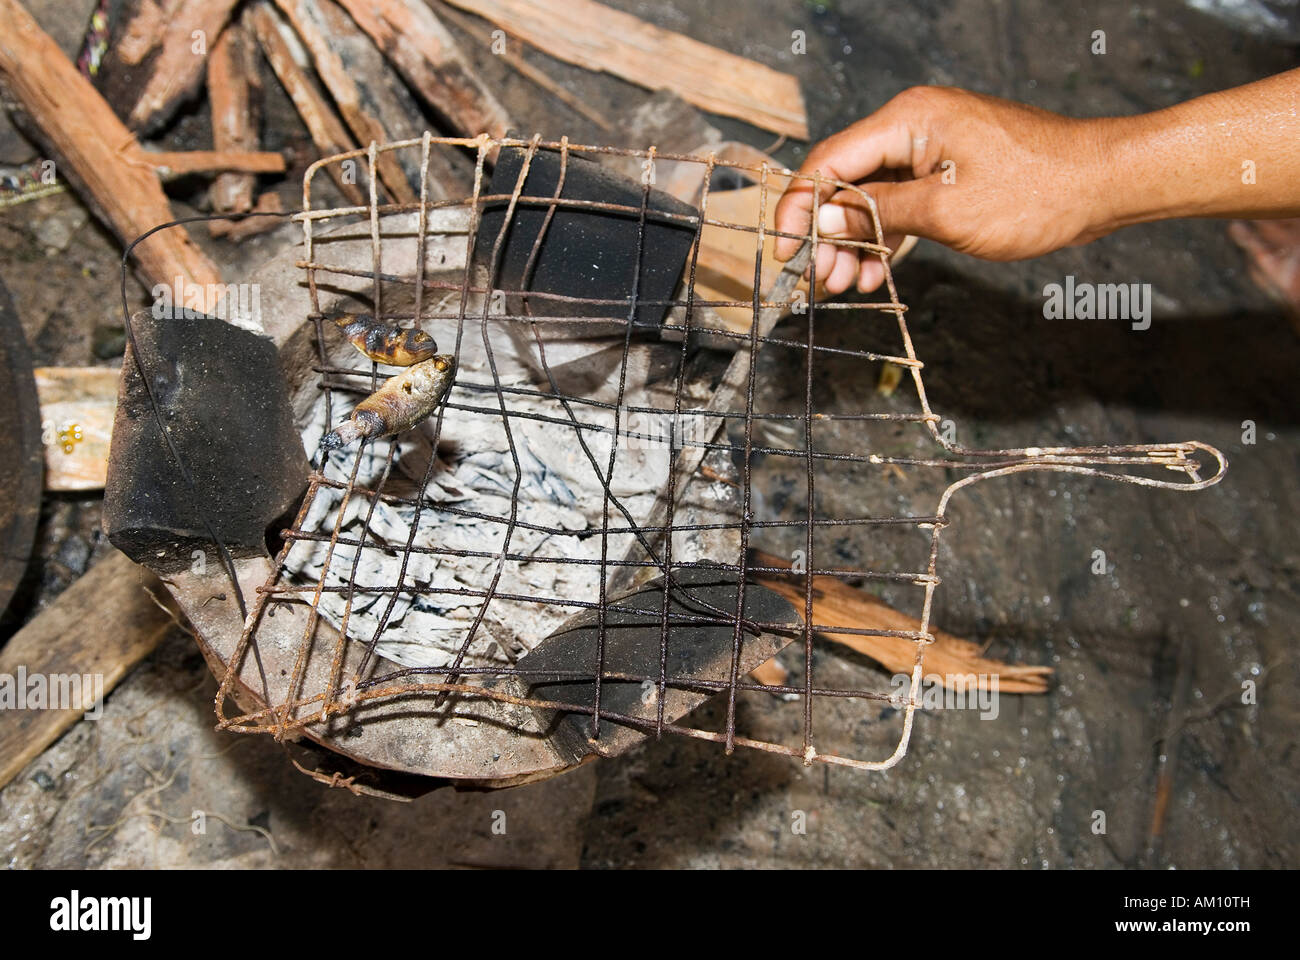 Repas : deux pauvres petits poissons sont grillés sur feu ouvert, des taudis Andong, Phnom Penh, Cambodge Banque D'Images